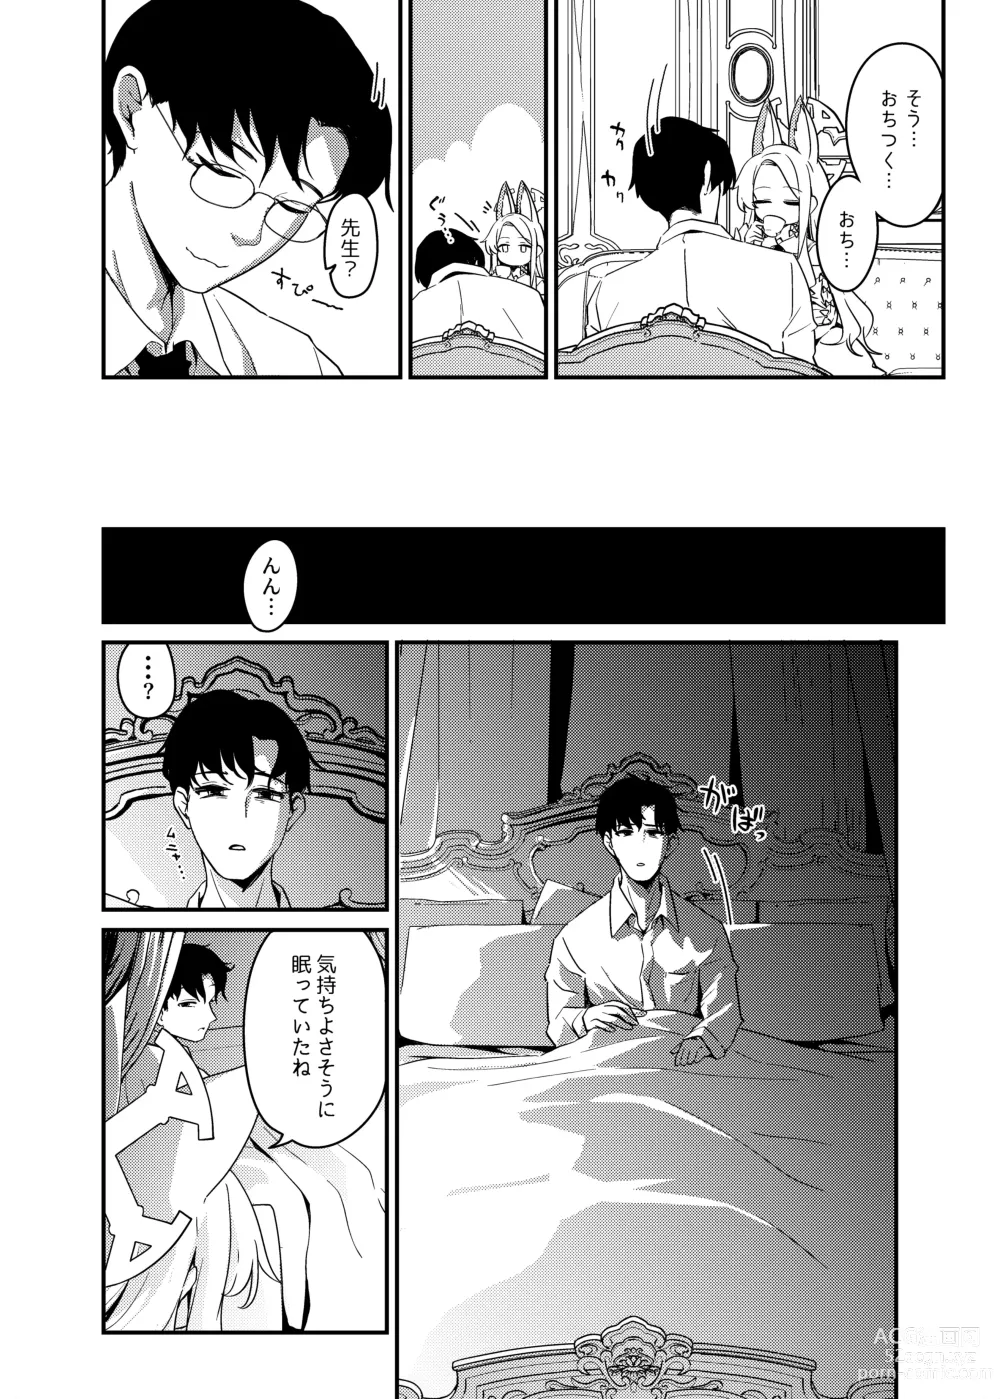 Page 3 of doujinshi Hajimete o Kimi to